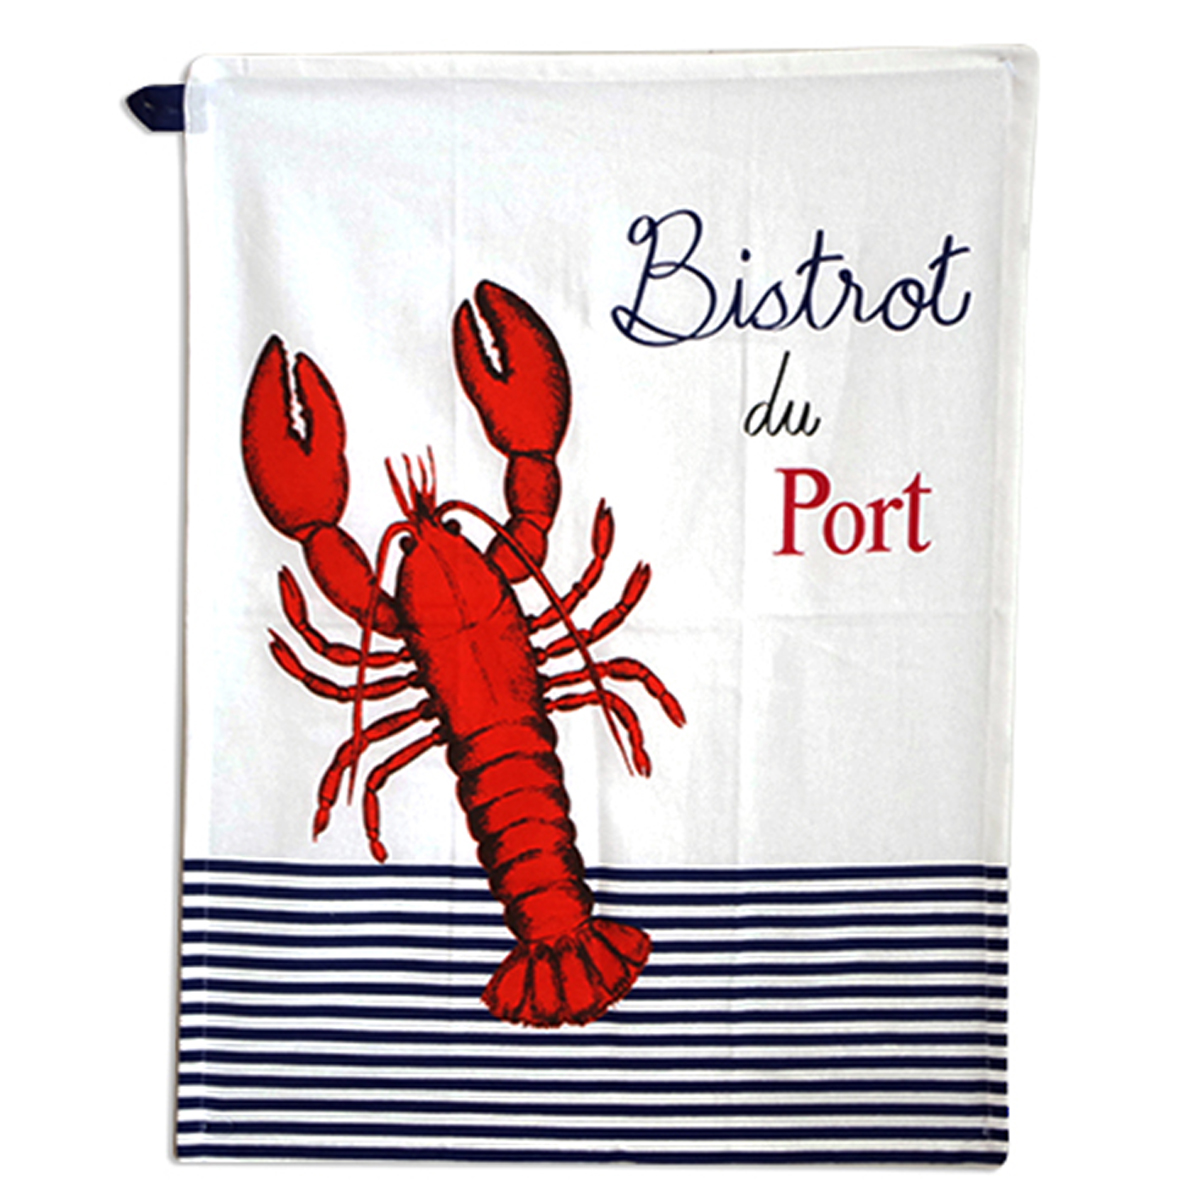 Torchon coton \'Bistrot du Port\' bleu rouge blanc (homard) - 60x45 cm - [A2438]